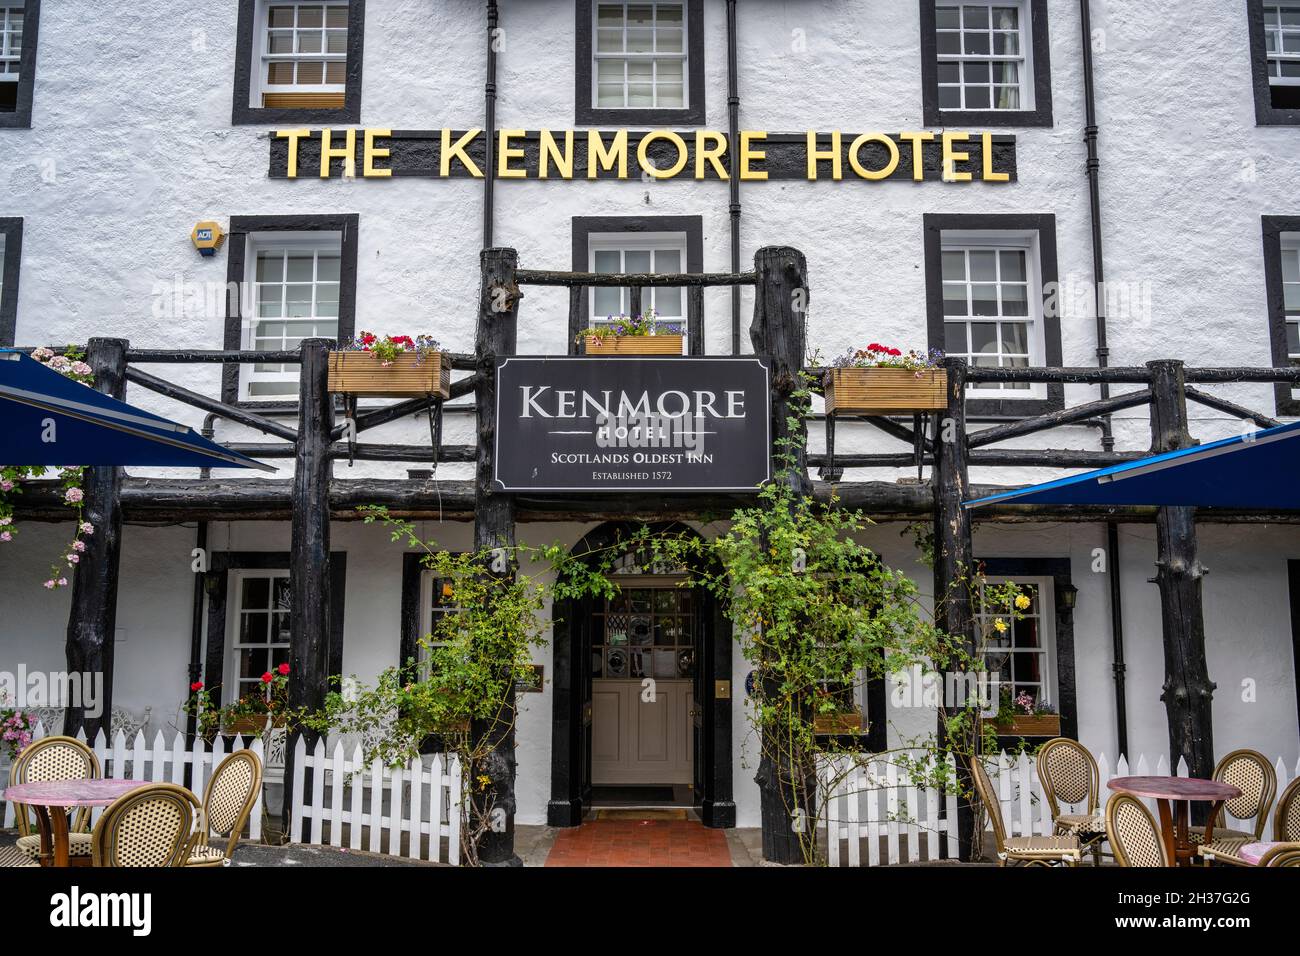 Das Kenmore Hotel, das als das älteste Hotel in Schottland gilt, befindet sich im malerischen Dorf Kenmore in Highland Perthshire, Schottland, Großbritannien Stockfoto